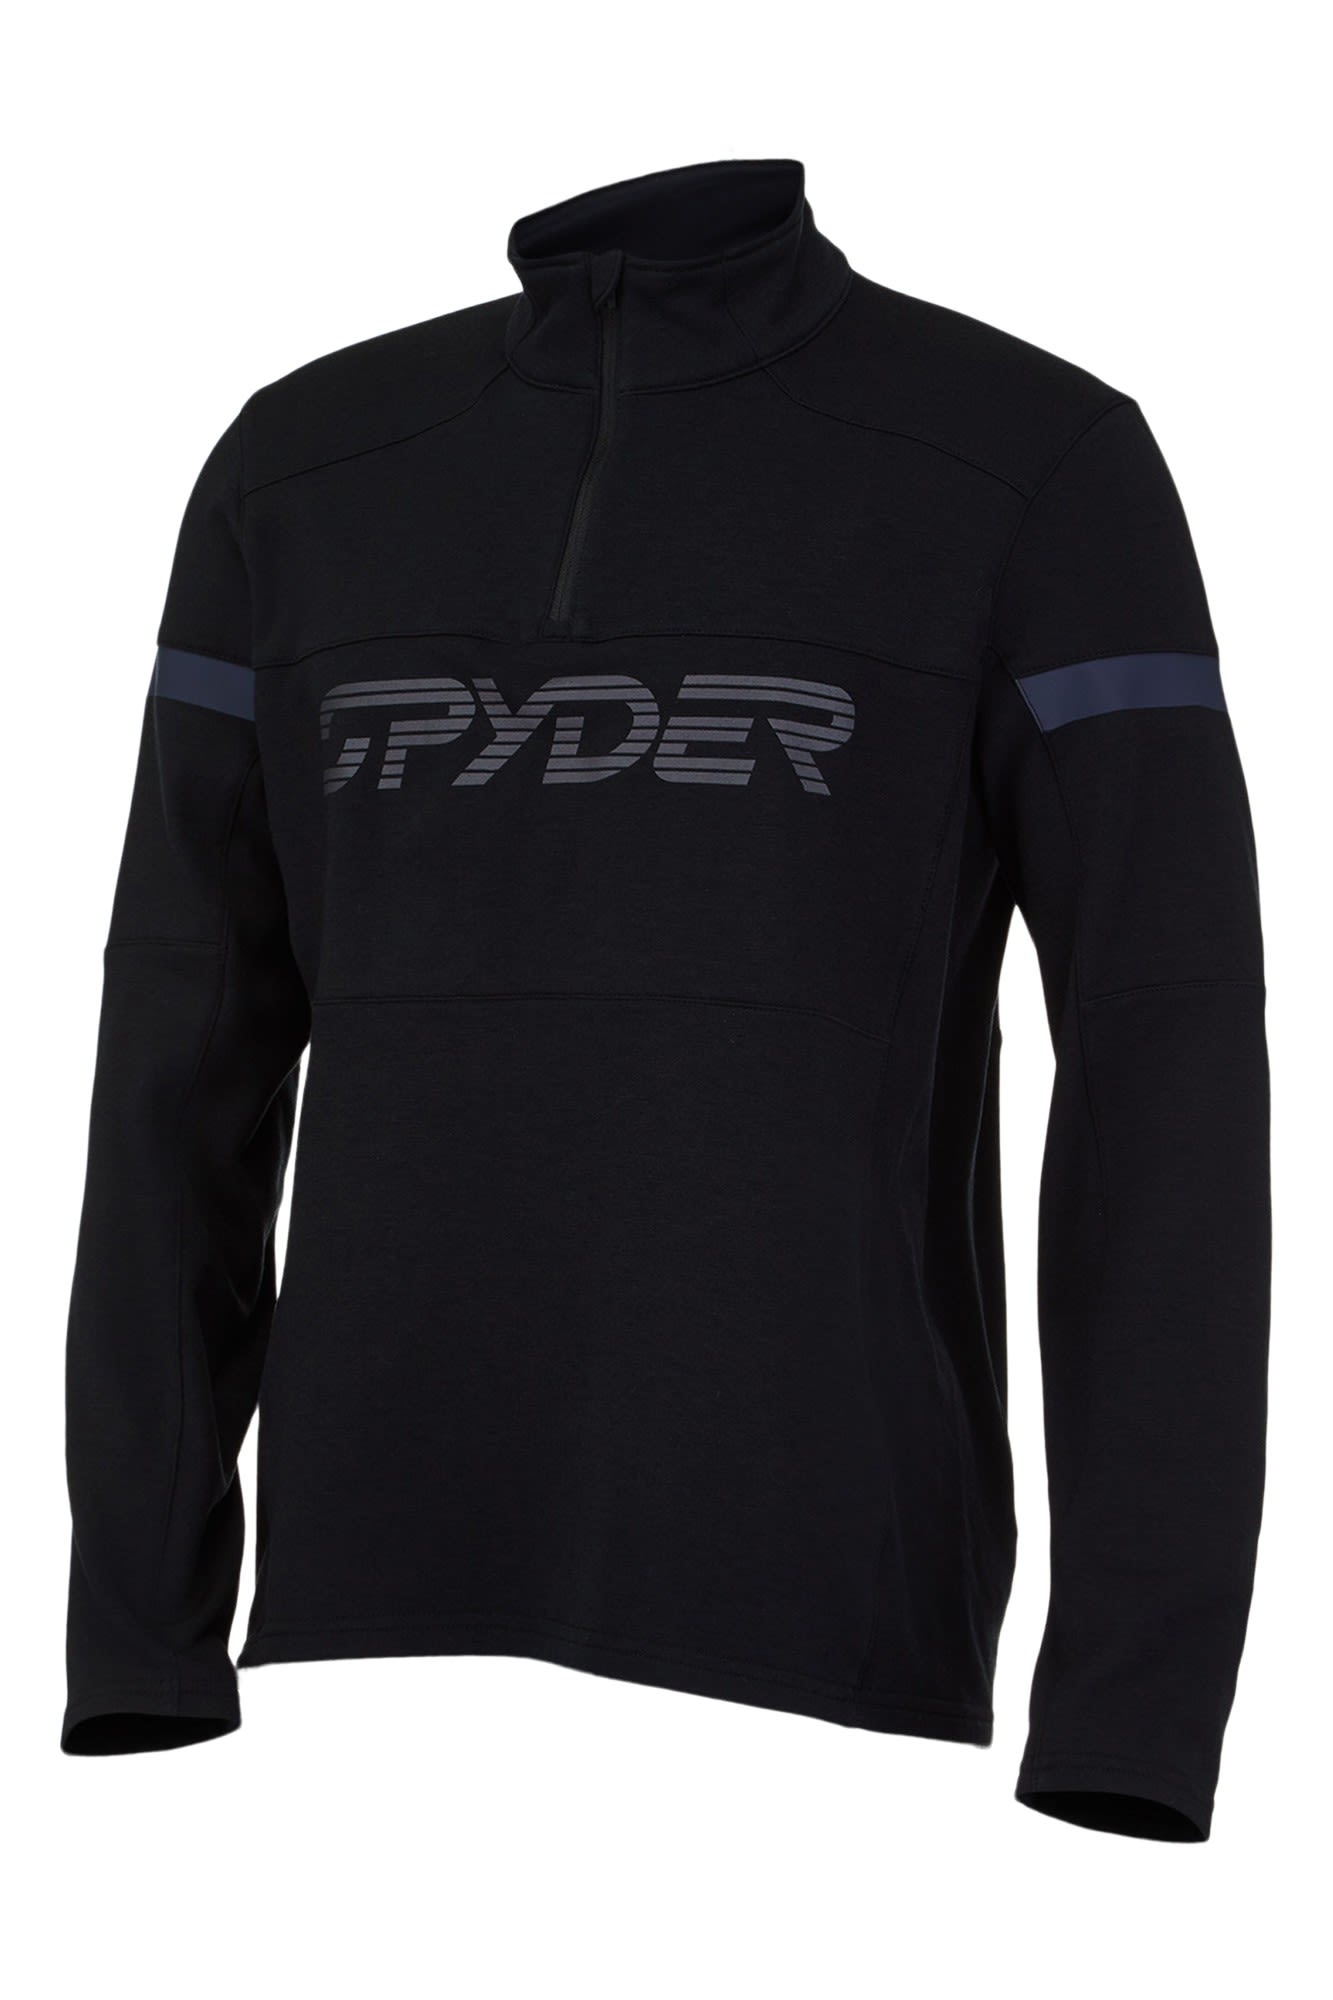 Spyder Speed Half Zip Jacket Schwarz- Male Freizeitjacken- Grsse S - Farbe Black unter Spyder